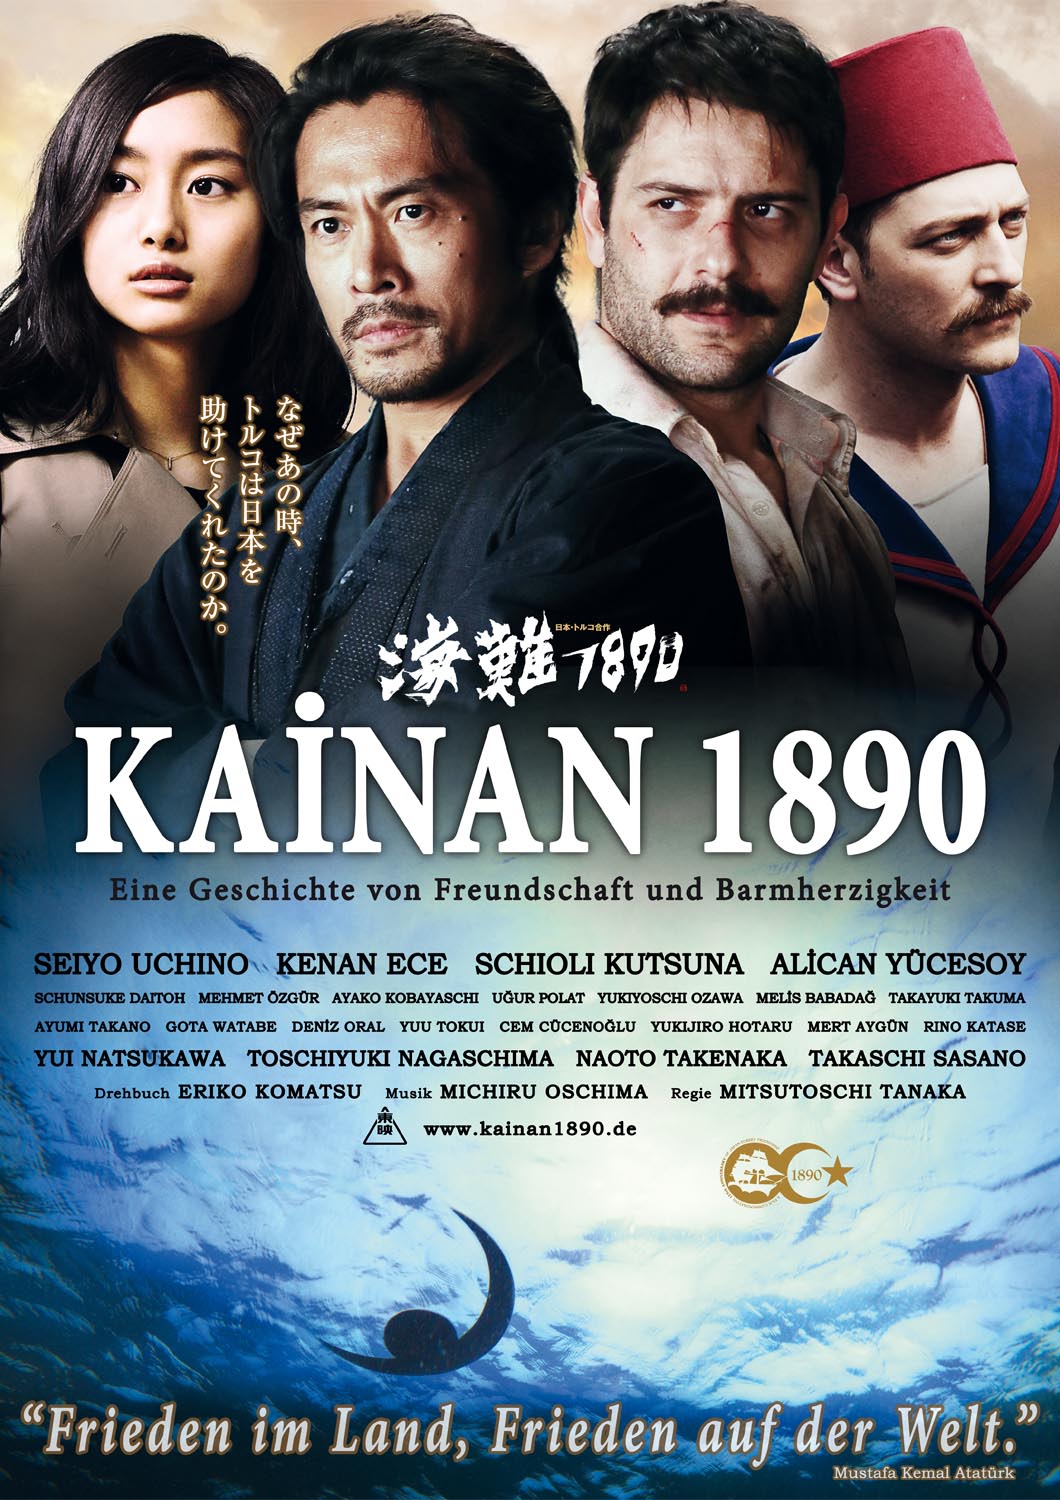 Kainan 1890 movie poster